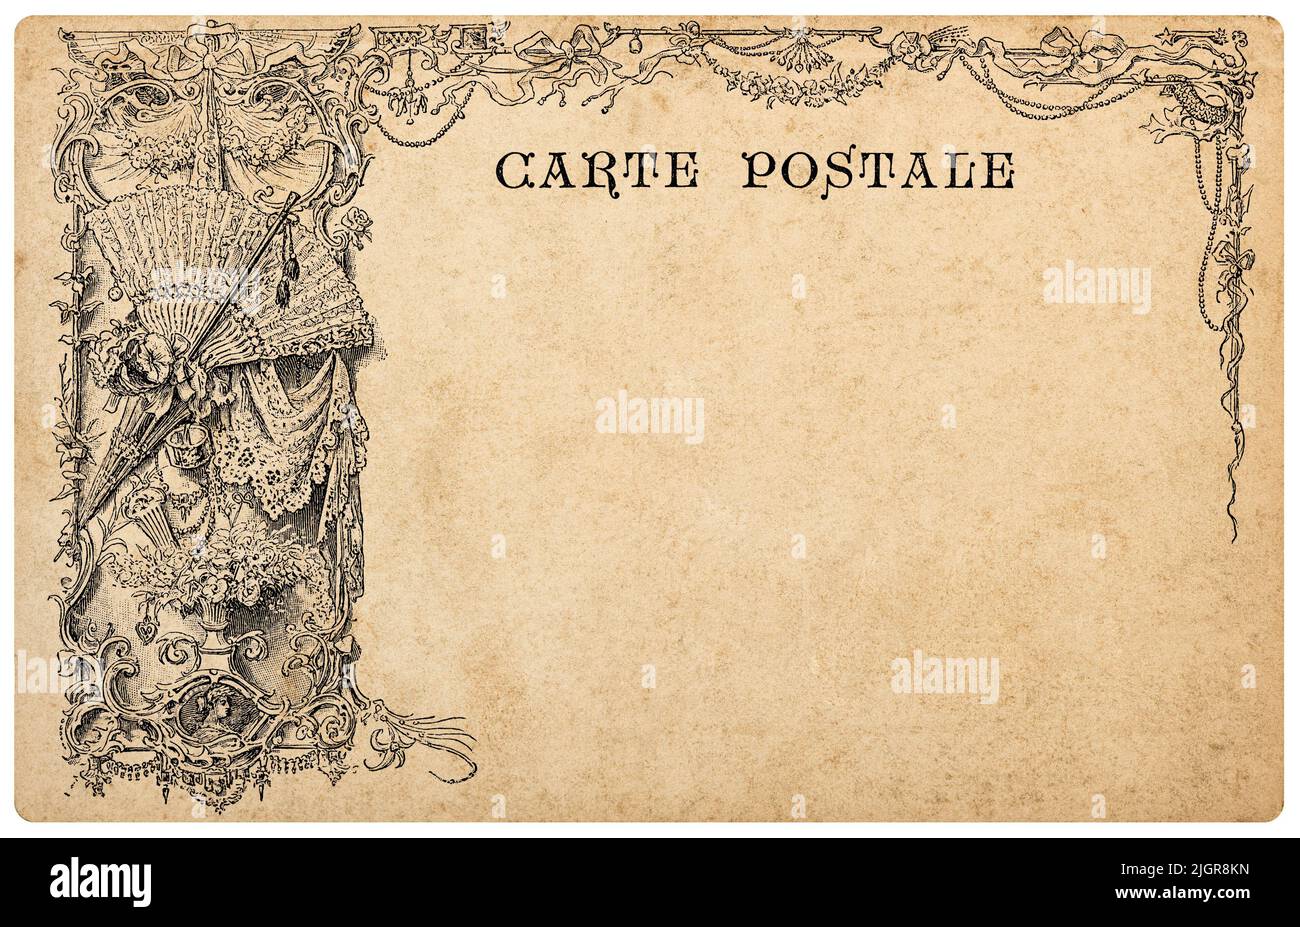 Carte postale décorative vintage. Arrière-plan de texture de papier ancien Banque D'Images